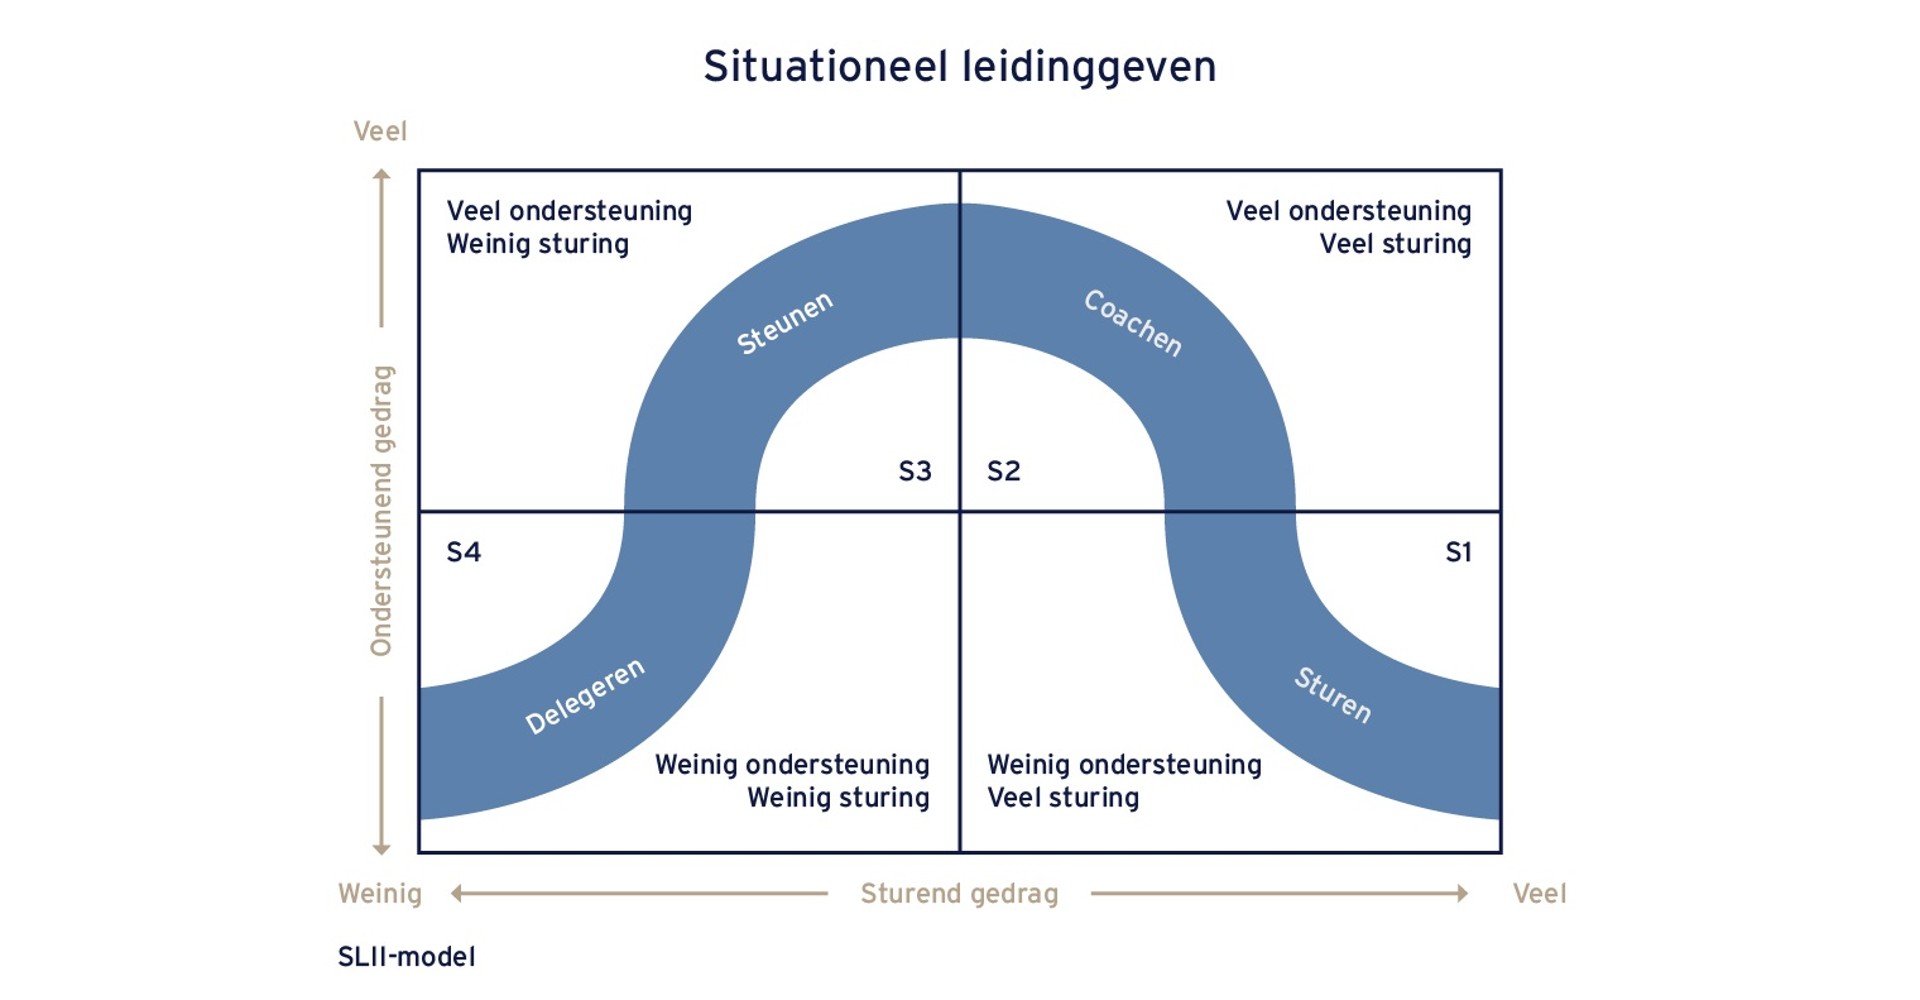 SLII-model voor situationeel leiderschap